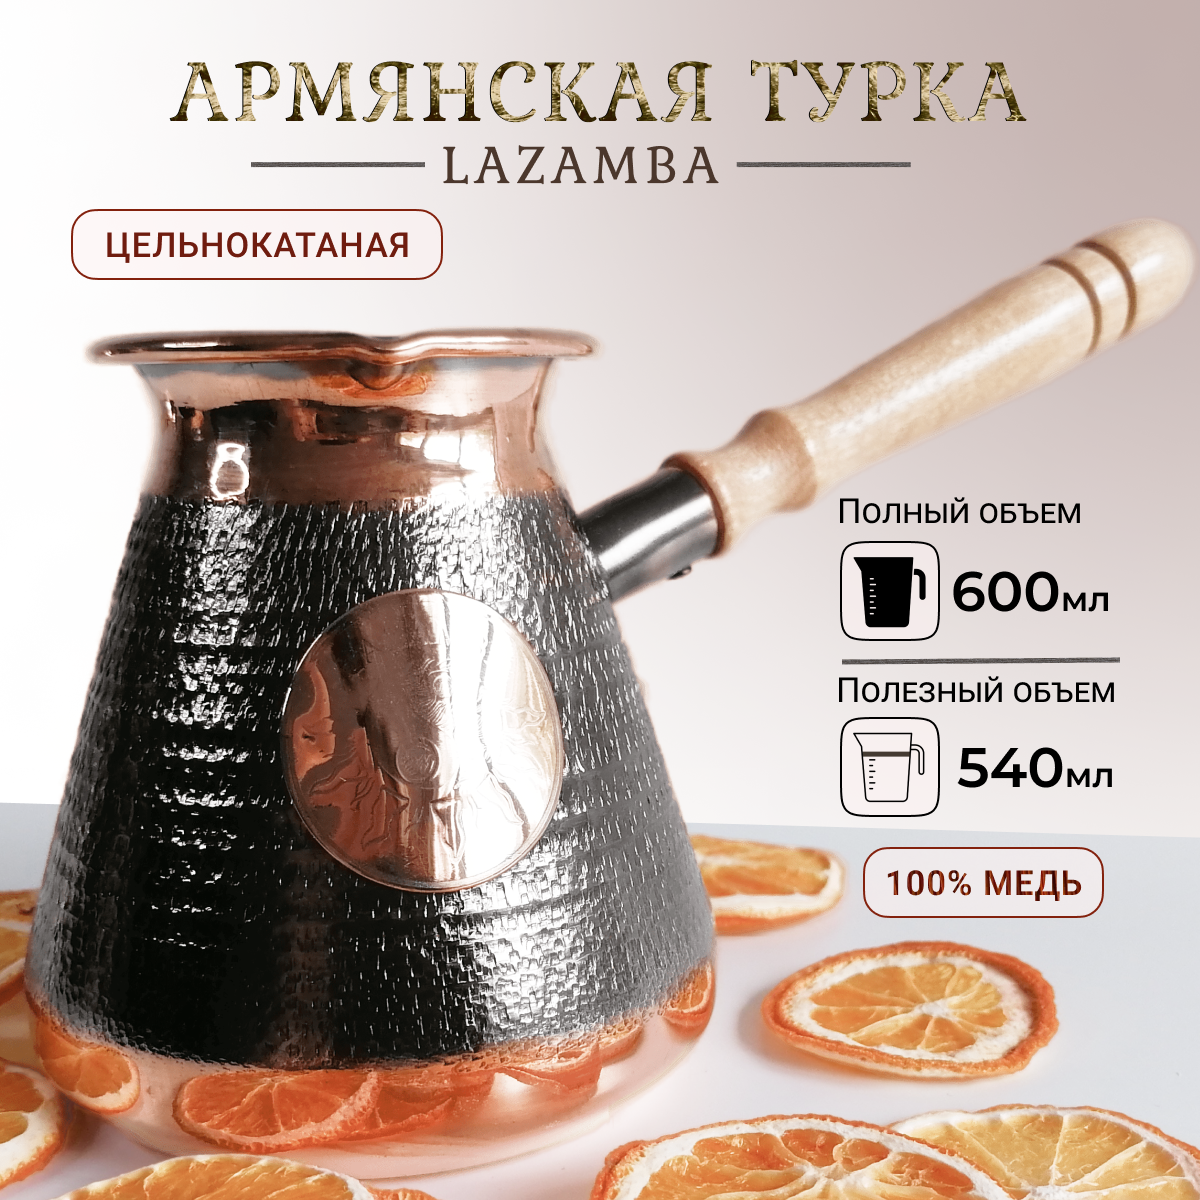 Турка для кофе медная армянская 04л цельнокатаная турка 600 мл.